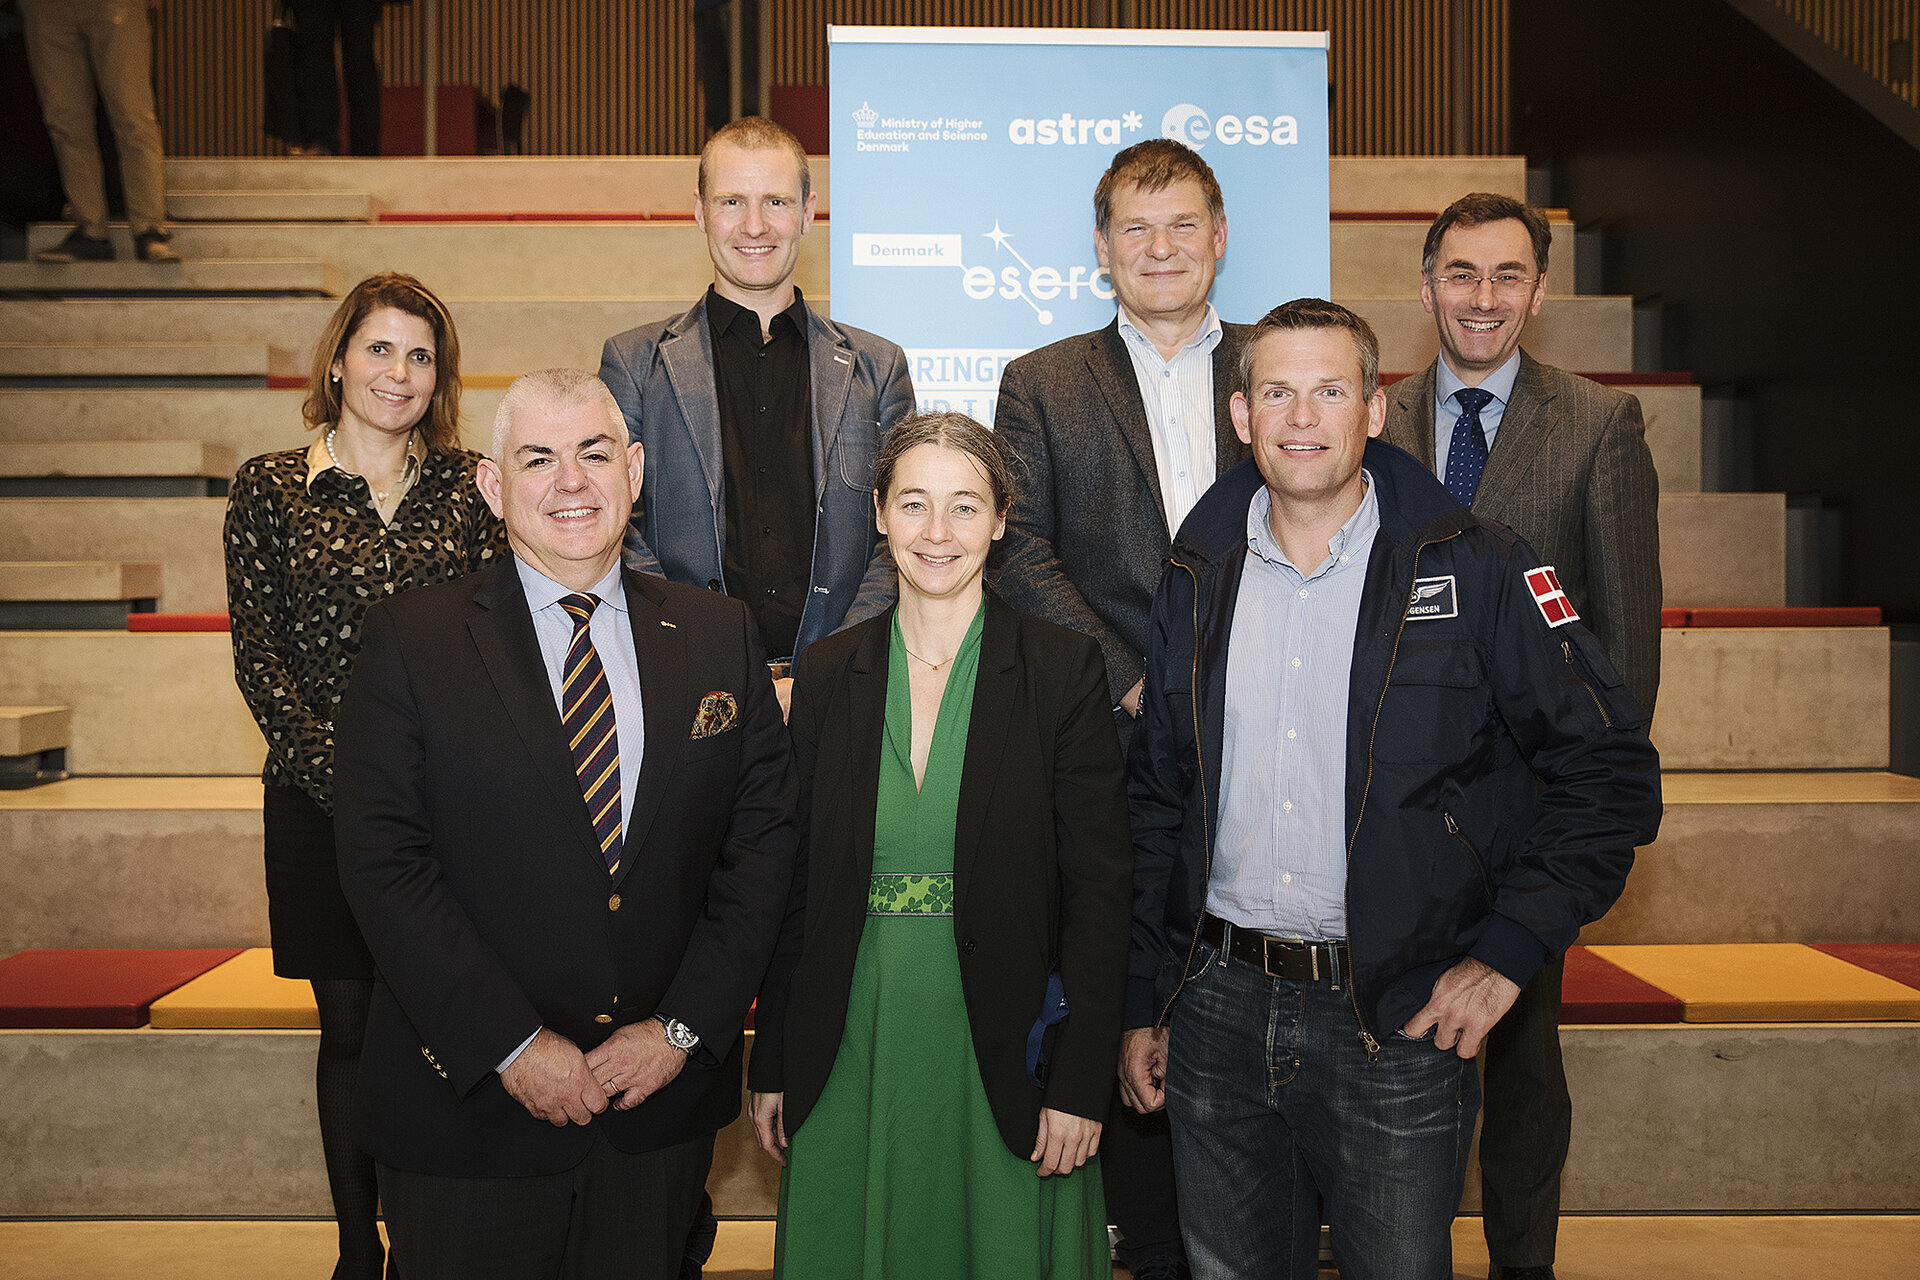 Representatives of funding organisations of ESERO Denmark